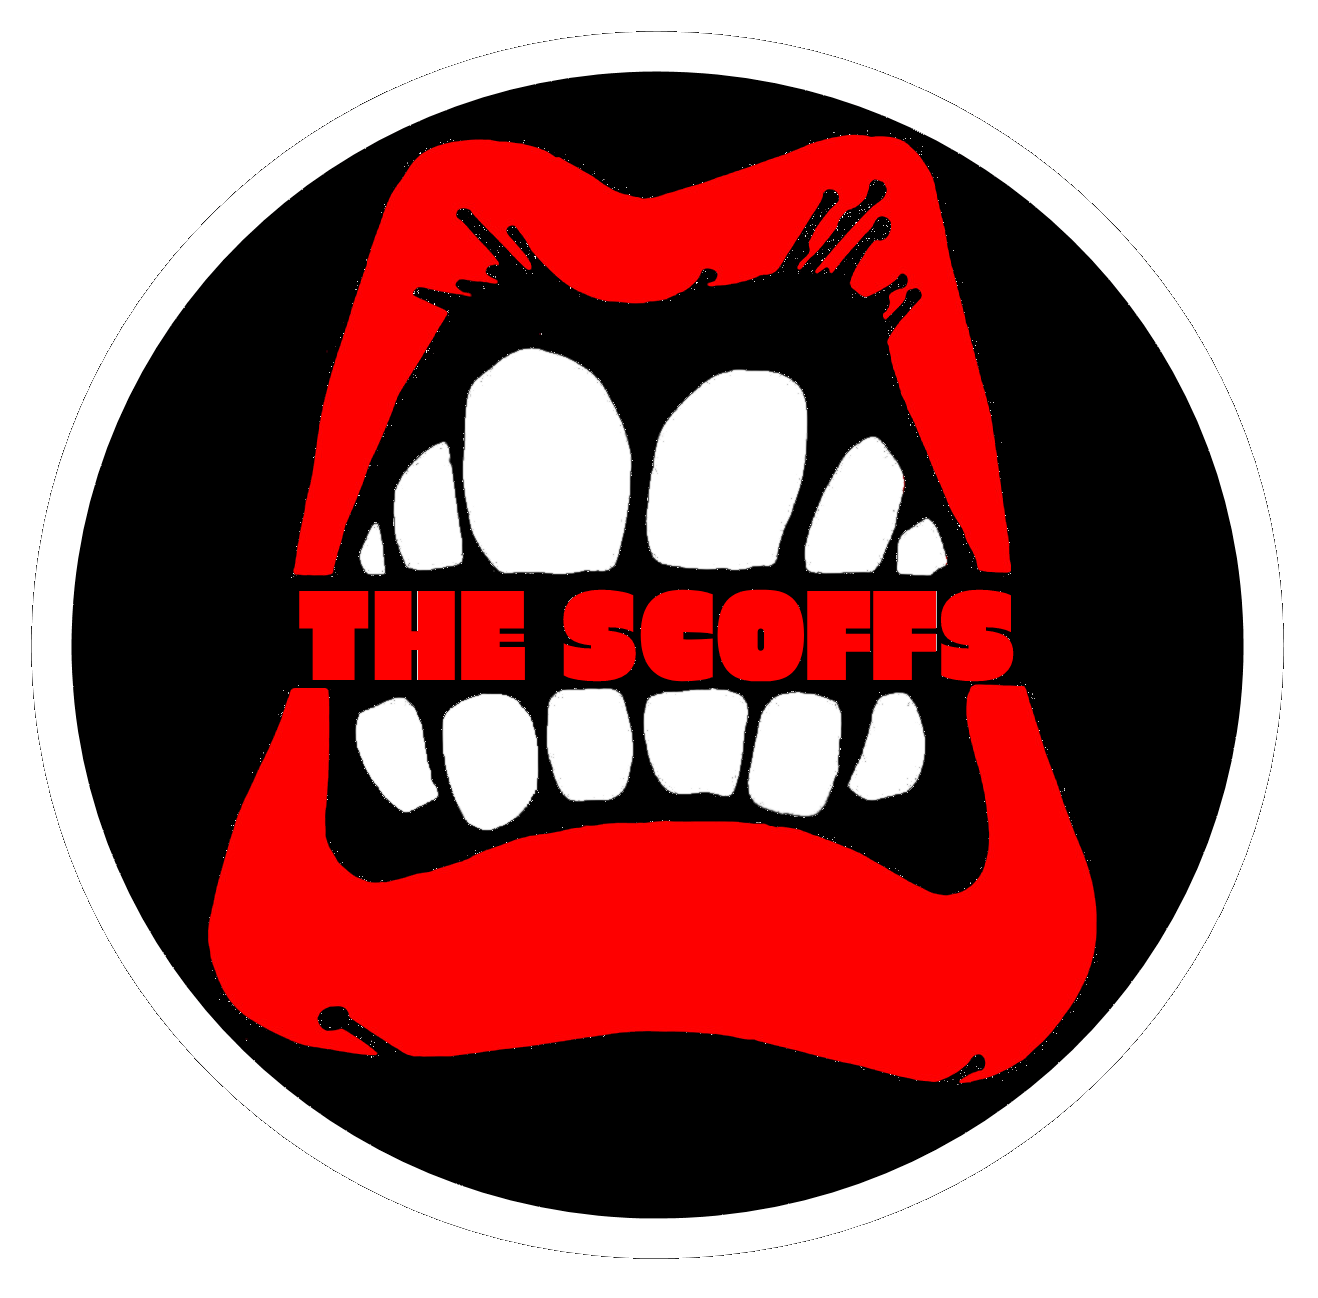 The Scoffs